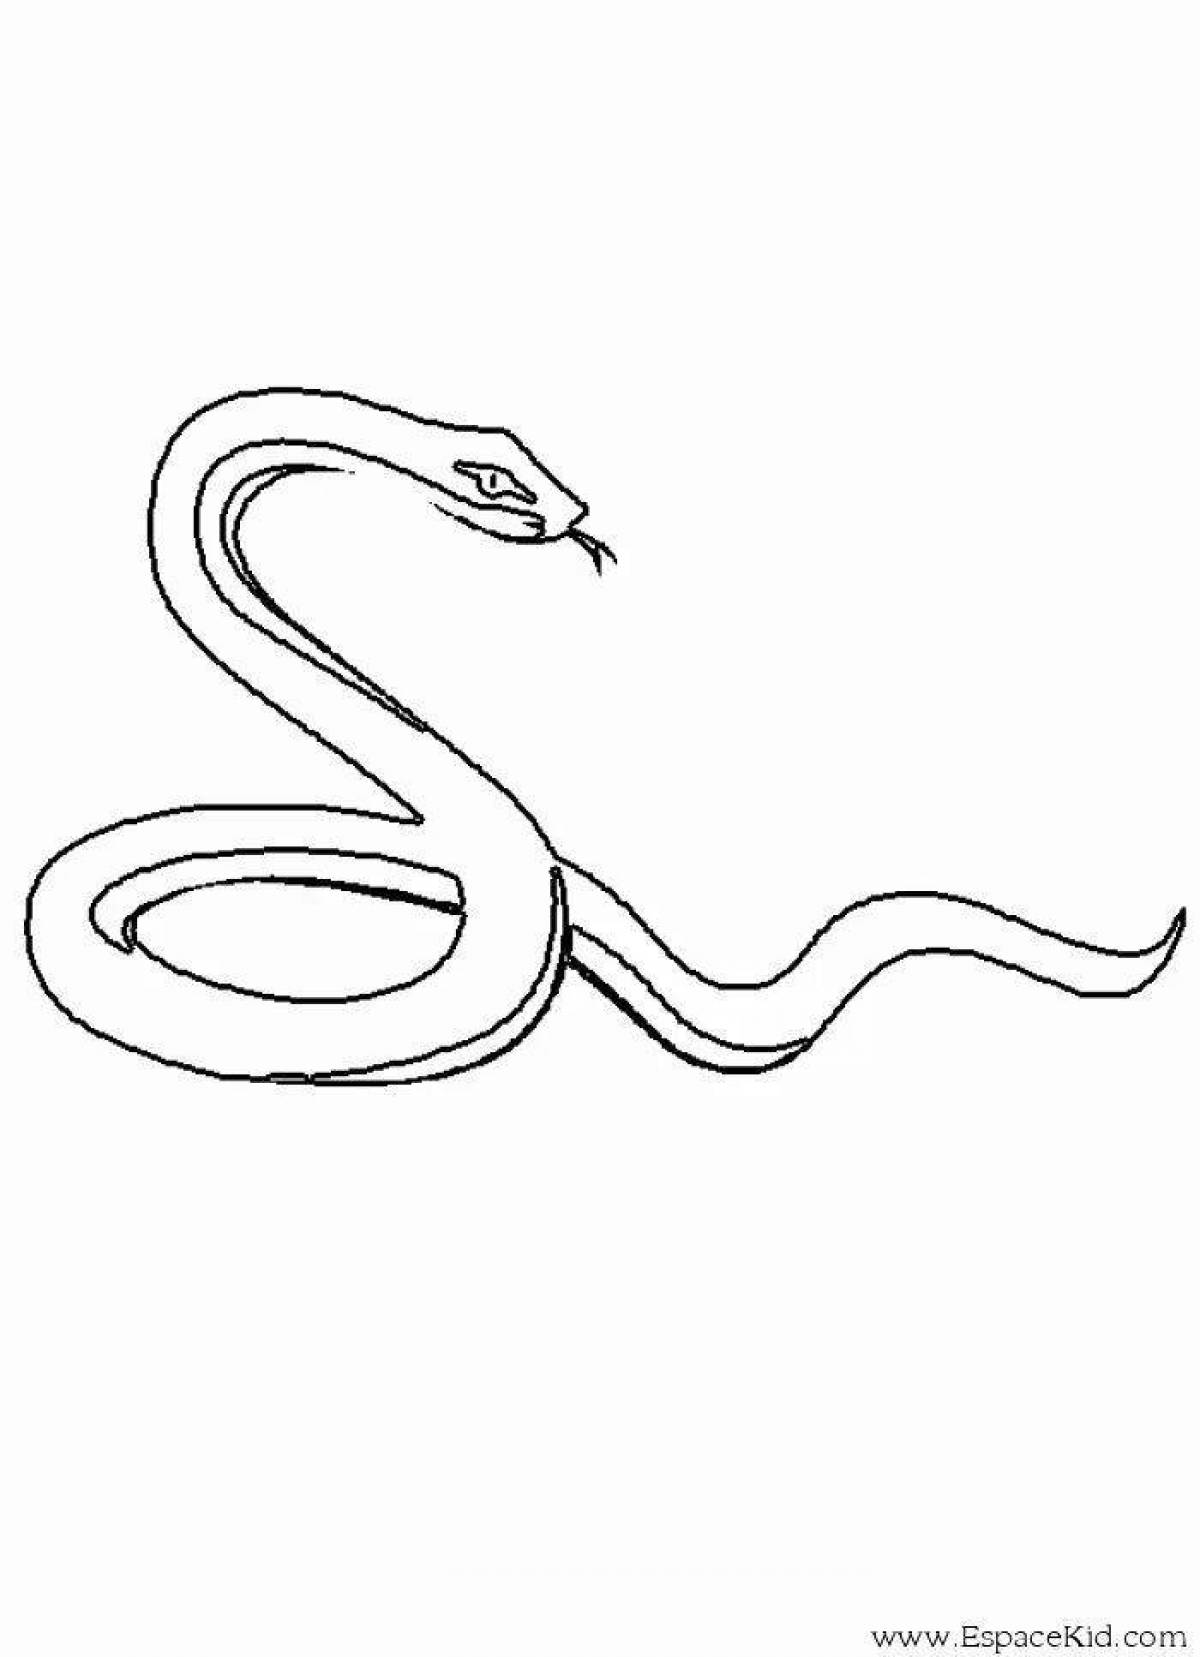 Змея медянка раскраска